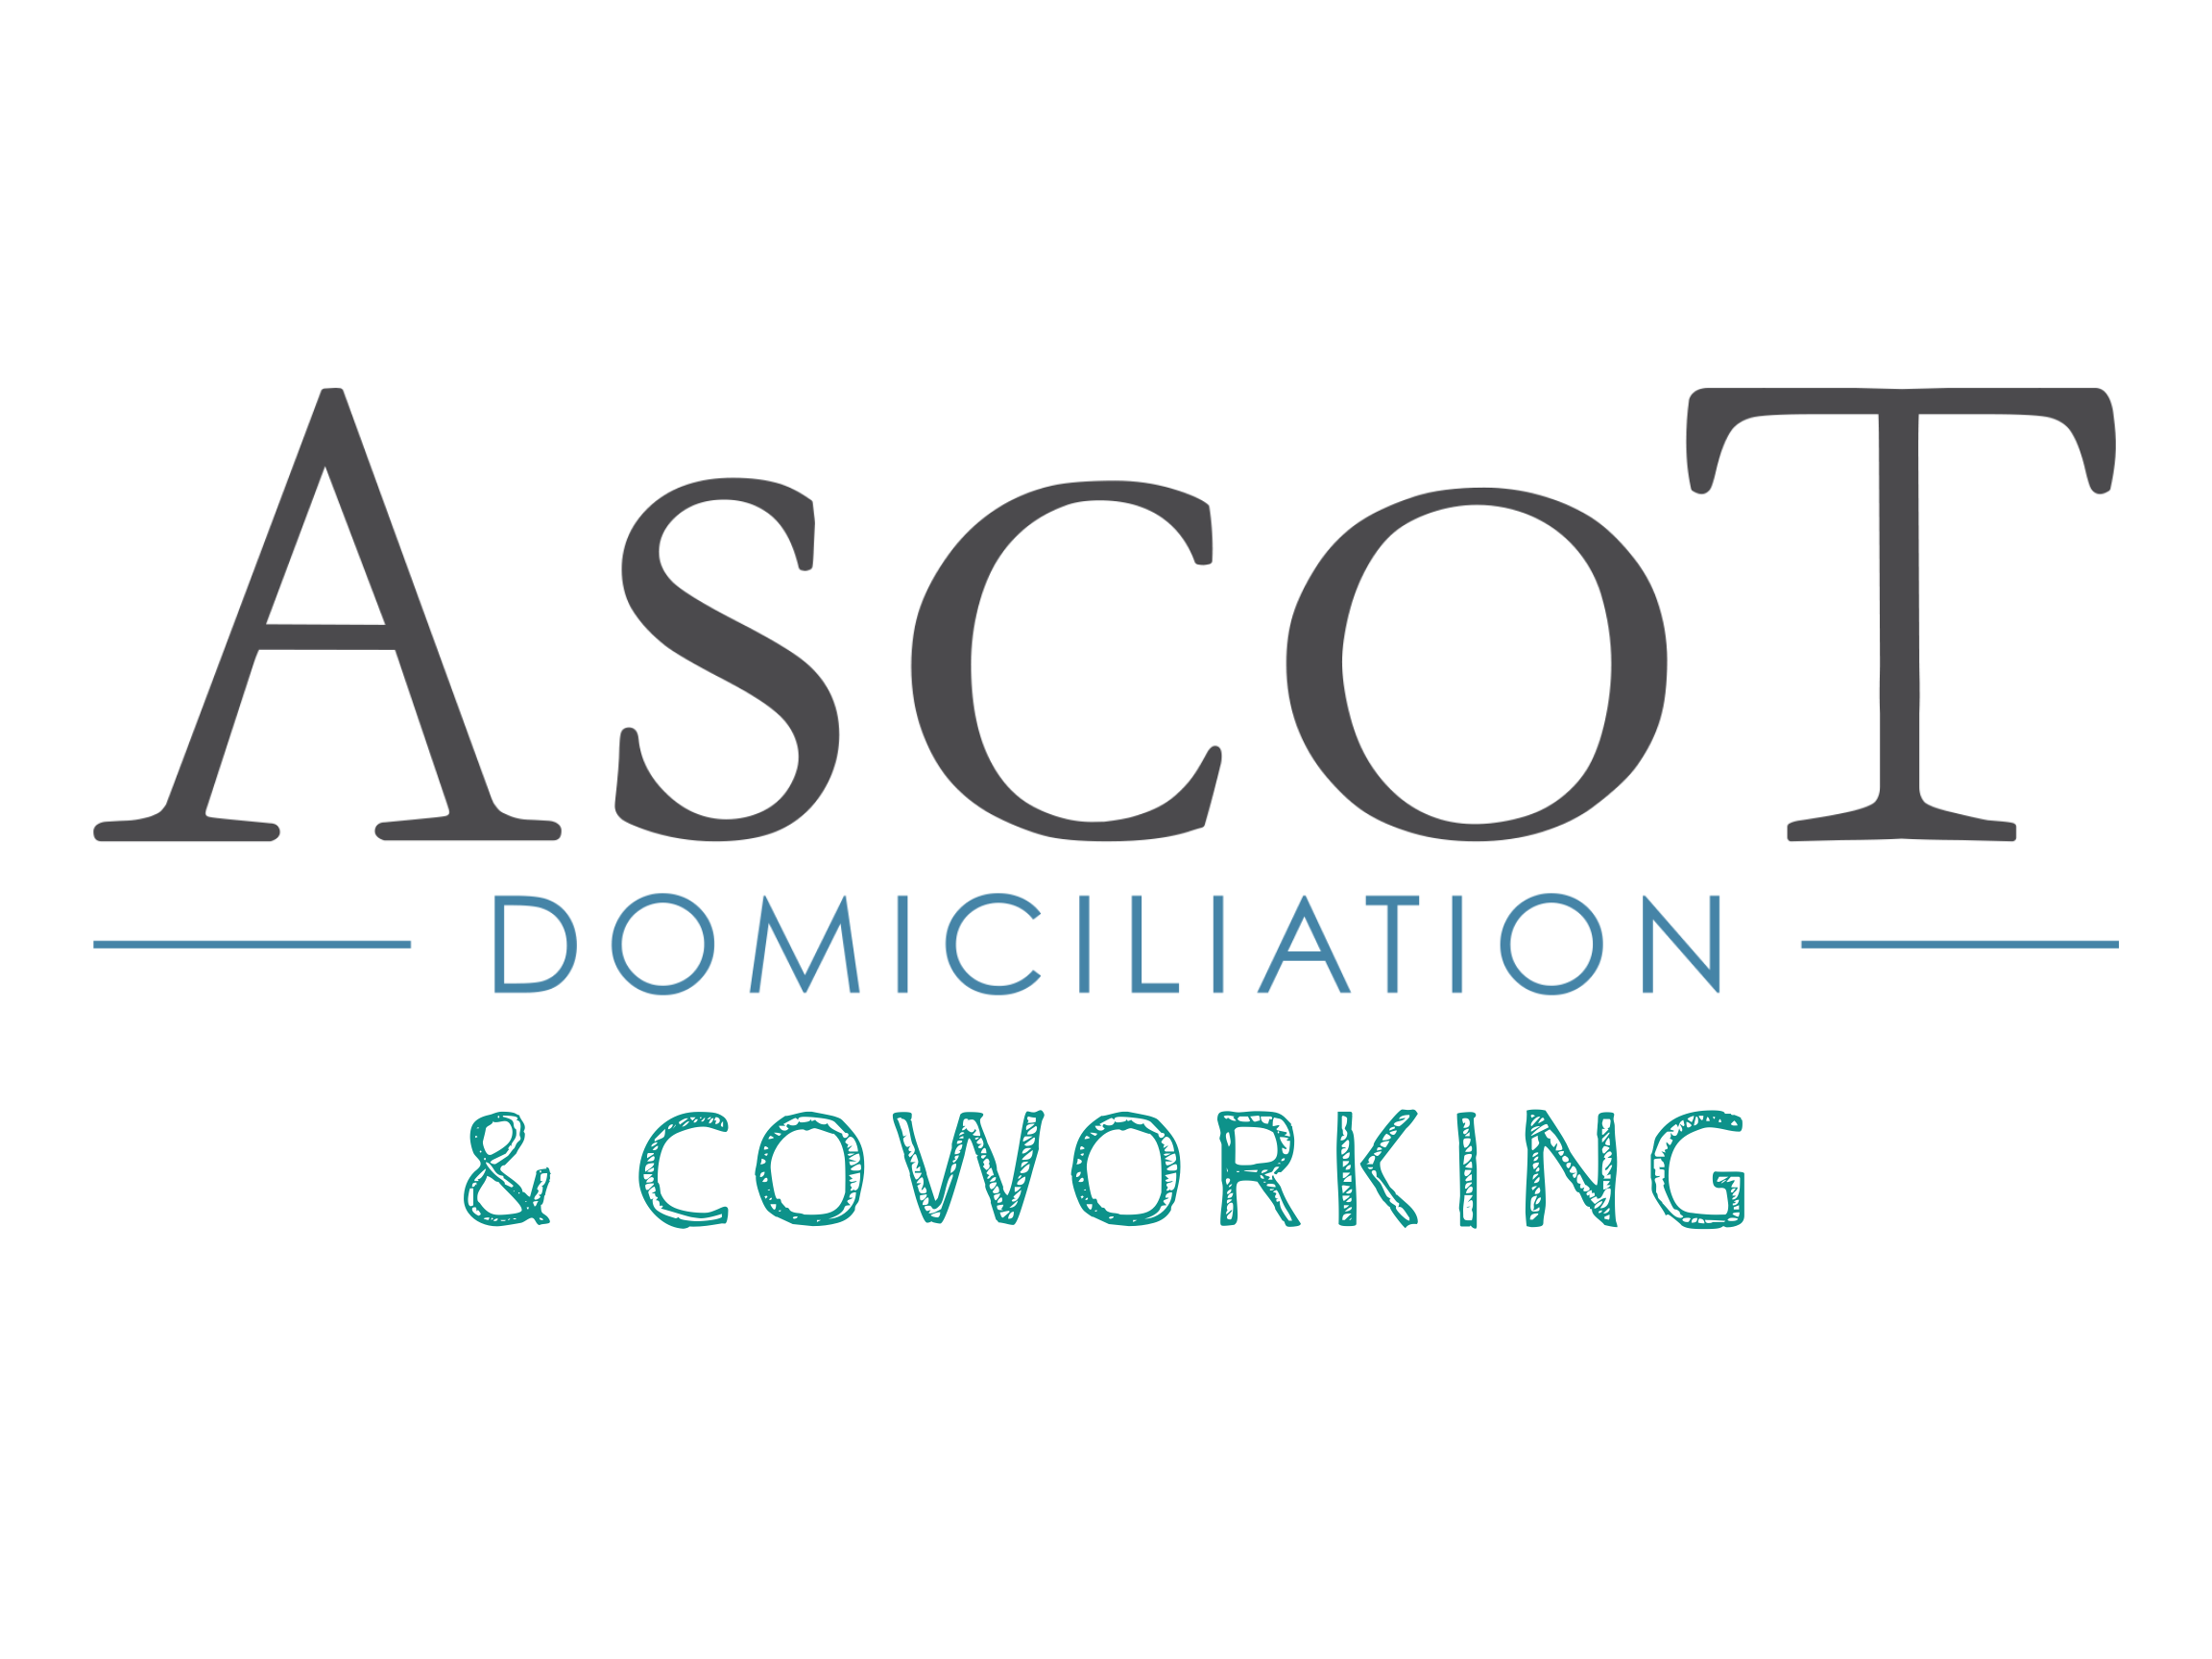 Ascot domiciliation